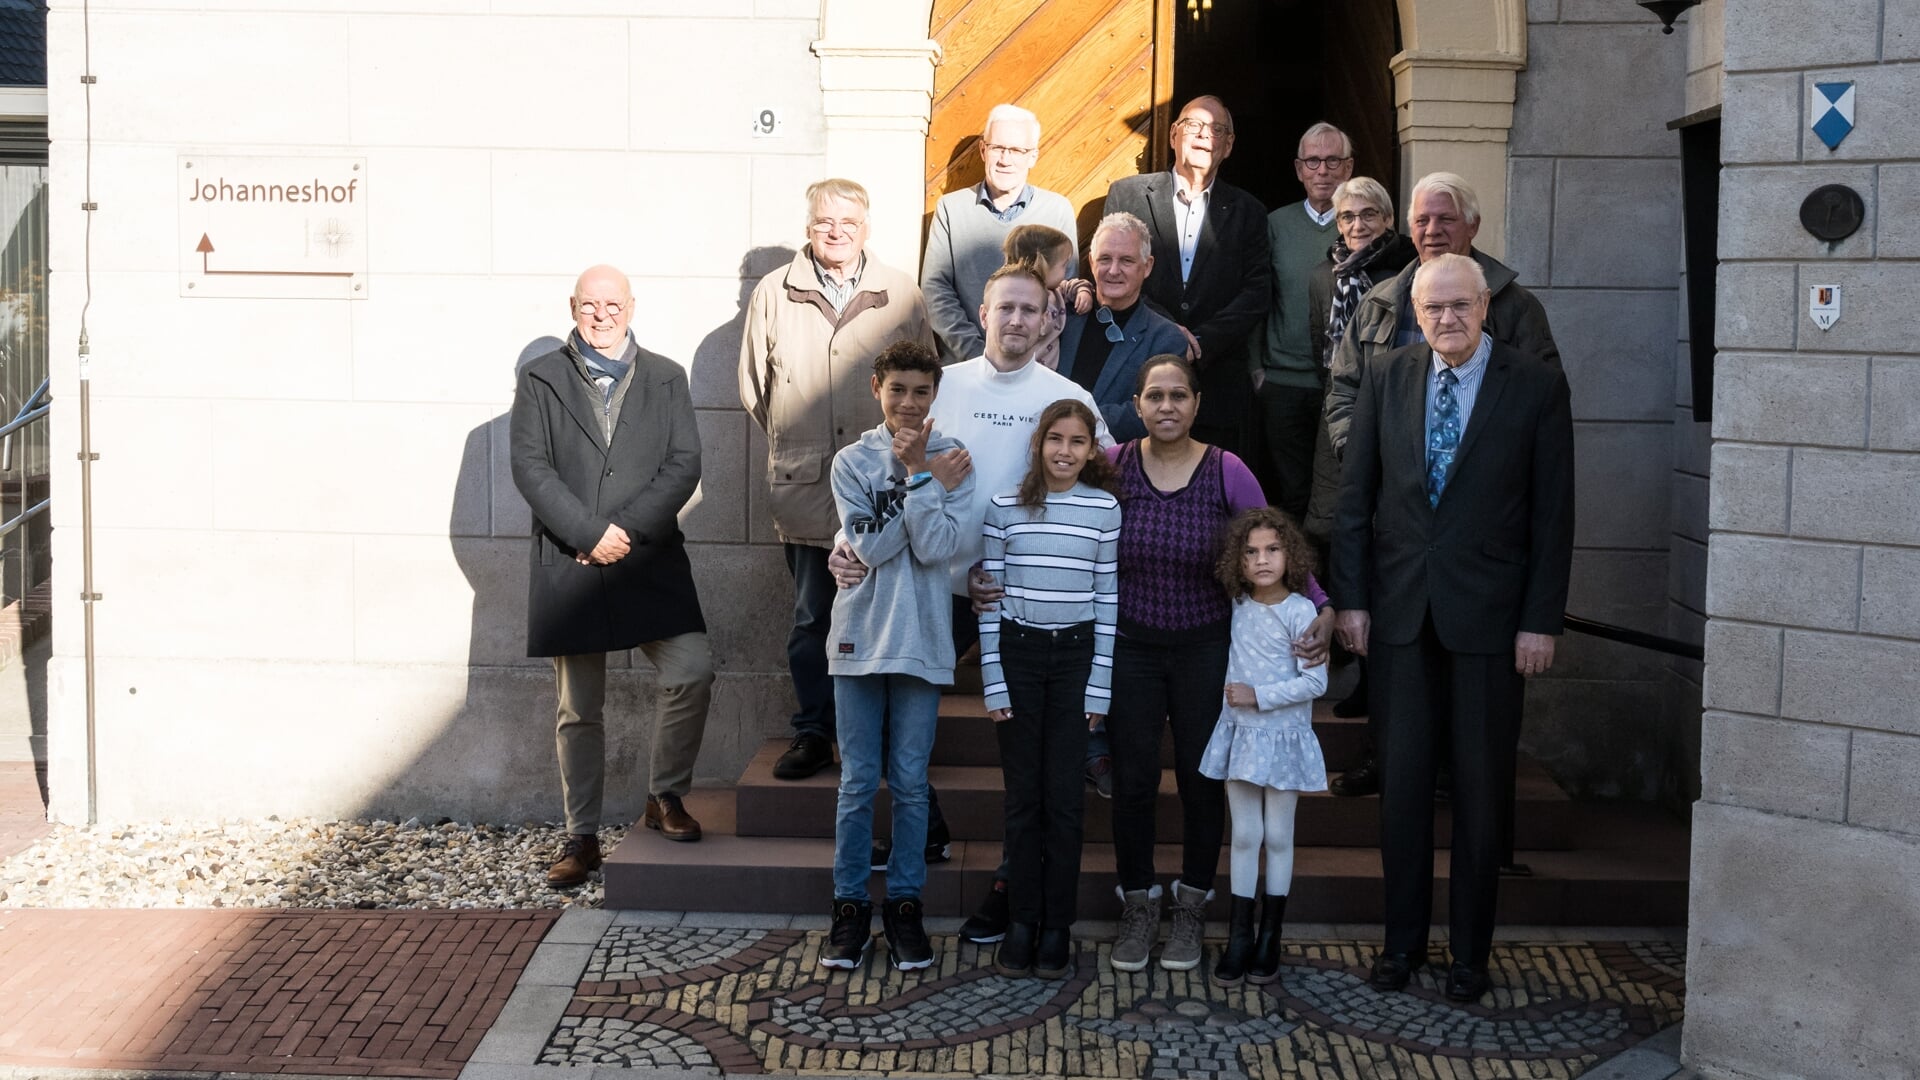 Leden van de Johanneskerk die Actie Kerkbalans een warm hart toedragen en zich ervoor inzetten. Foto: PR